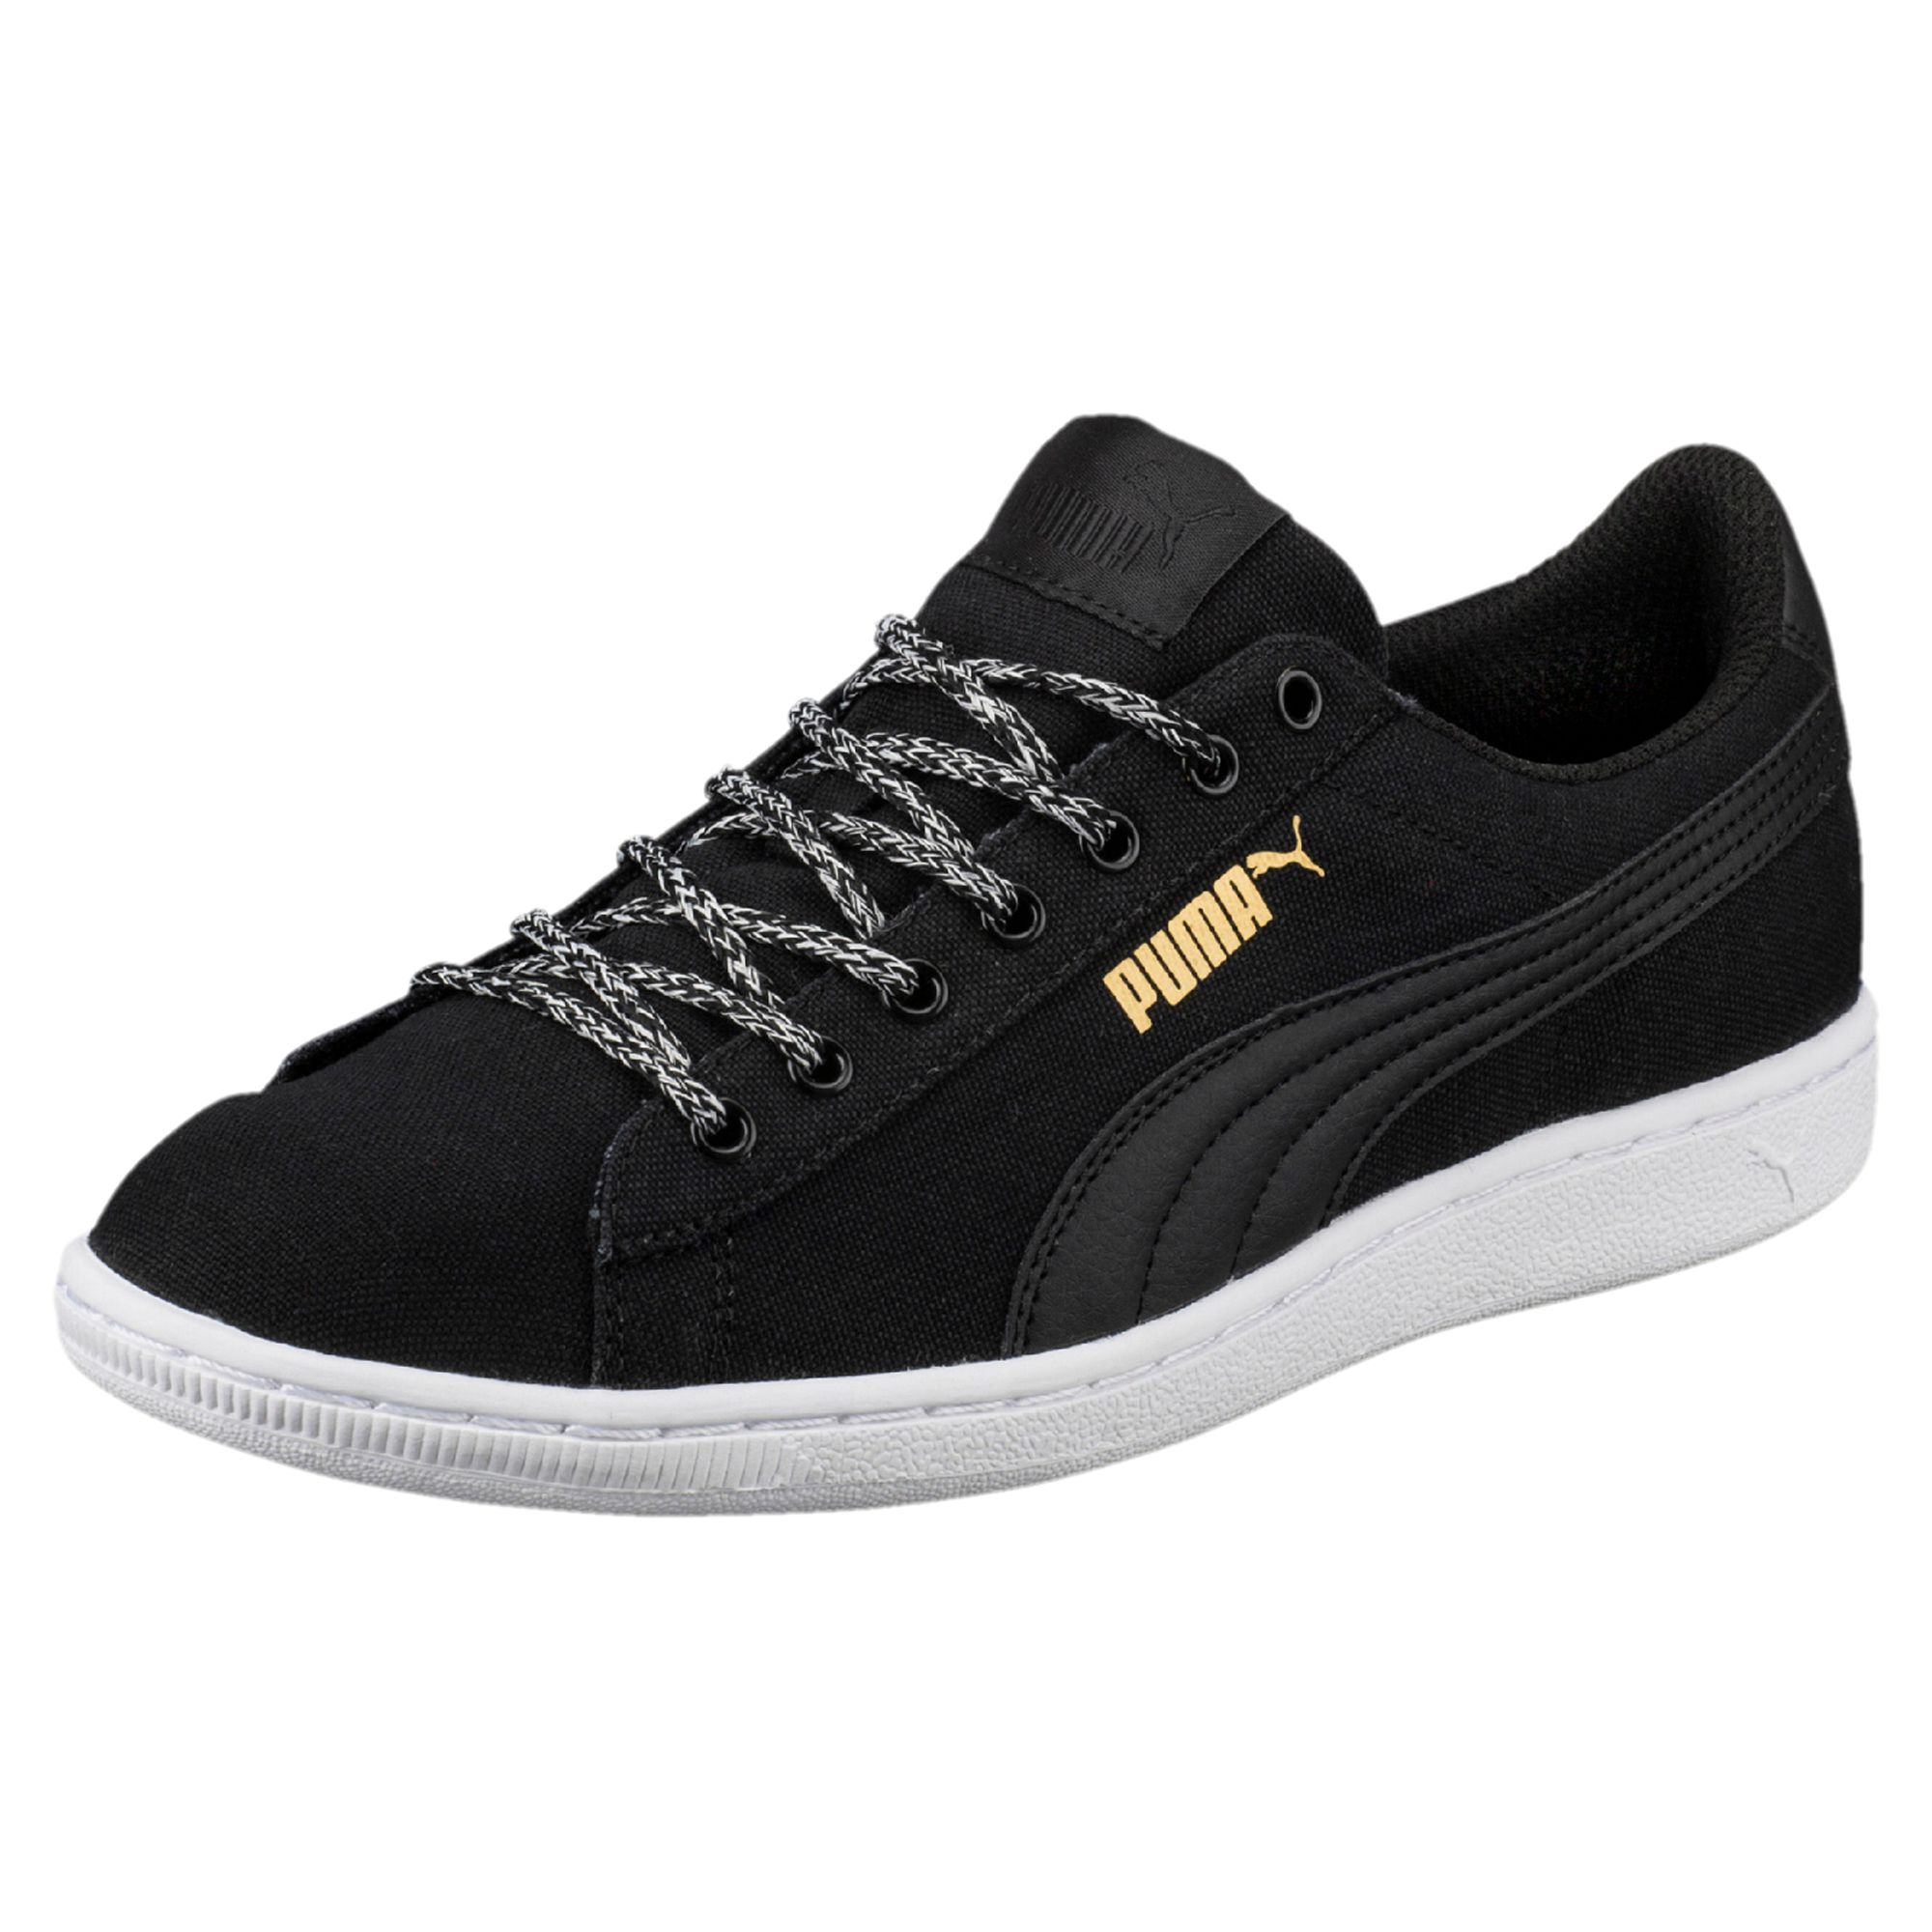 Women's Puma Vikky Spice Black Shoes $34.99 - Sneakadeal.com